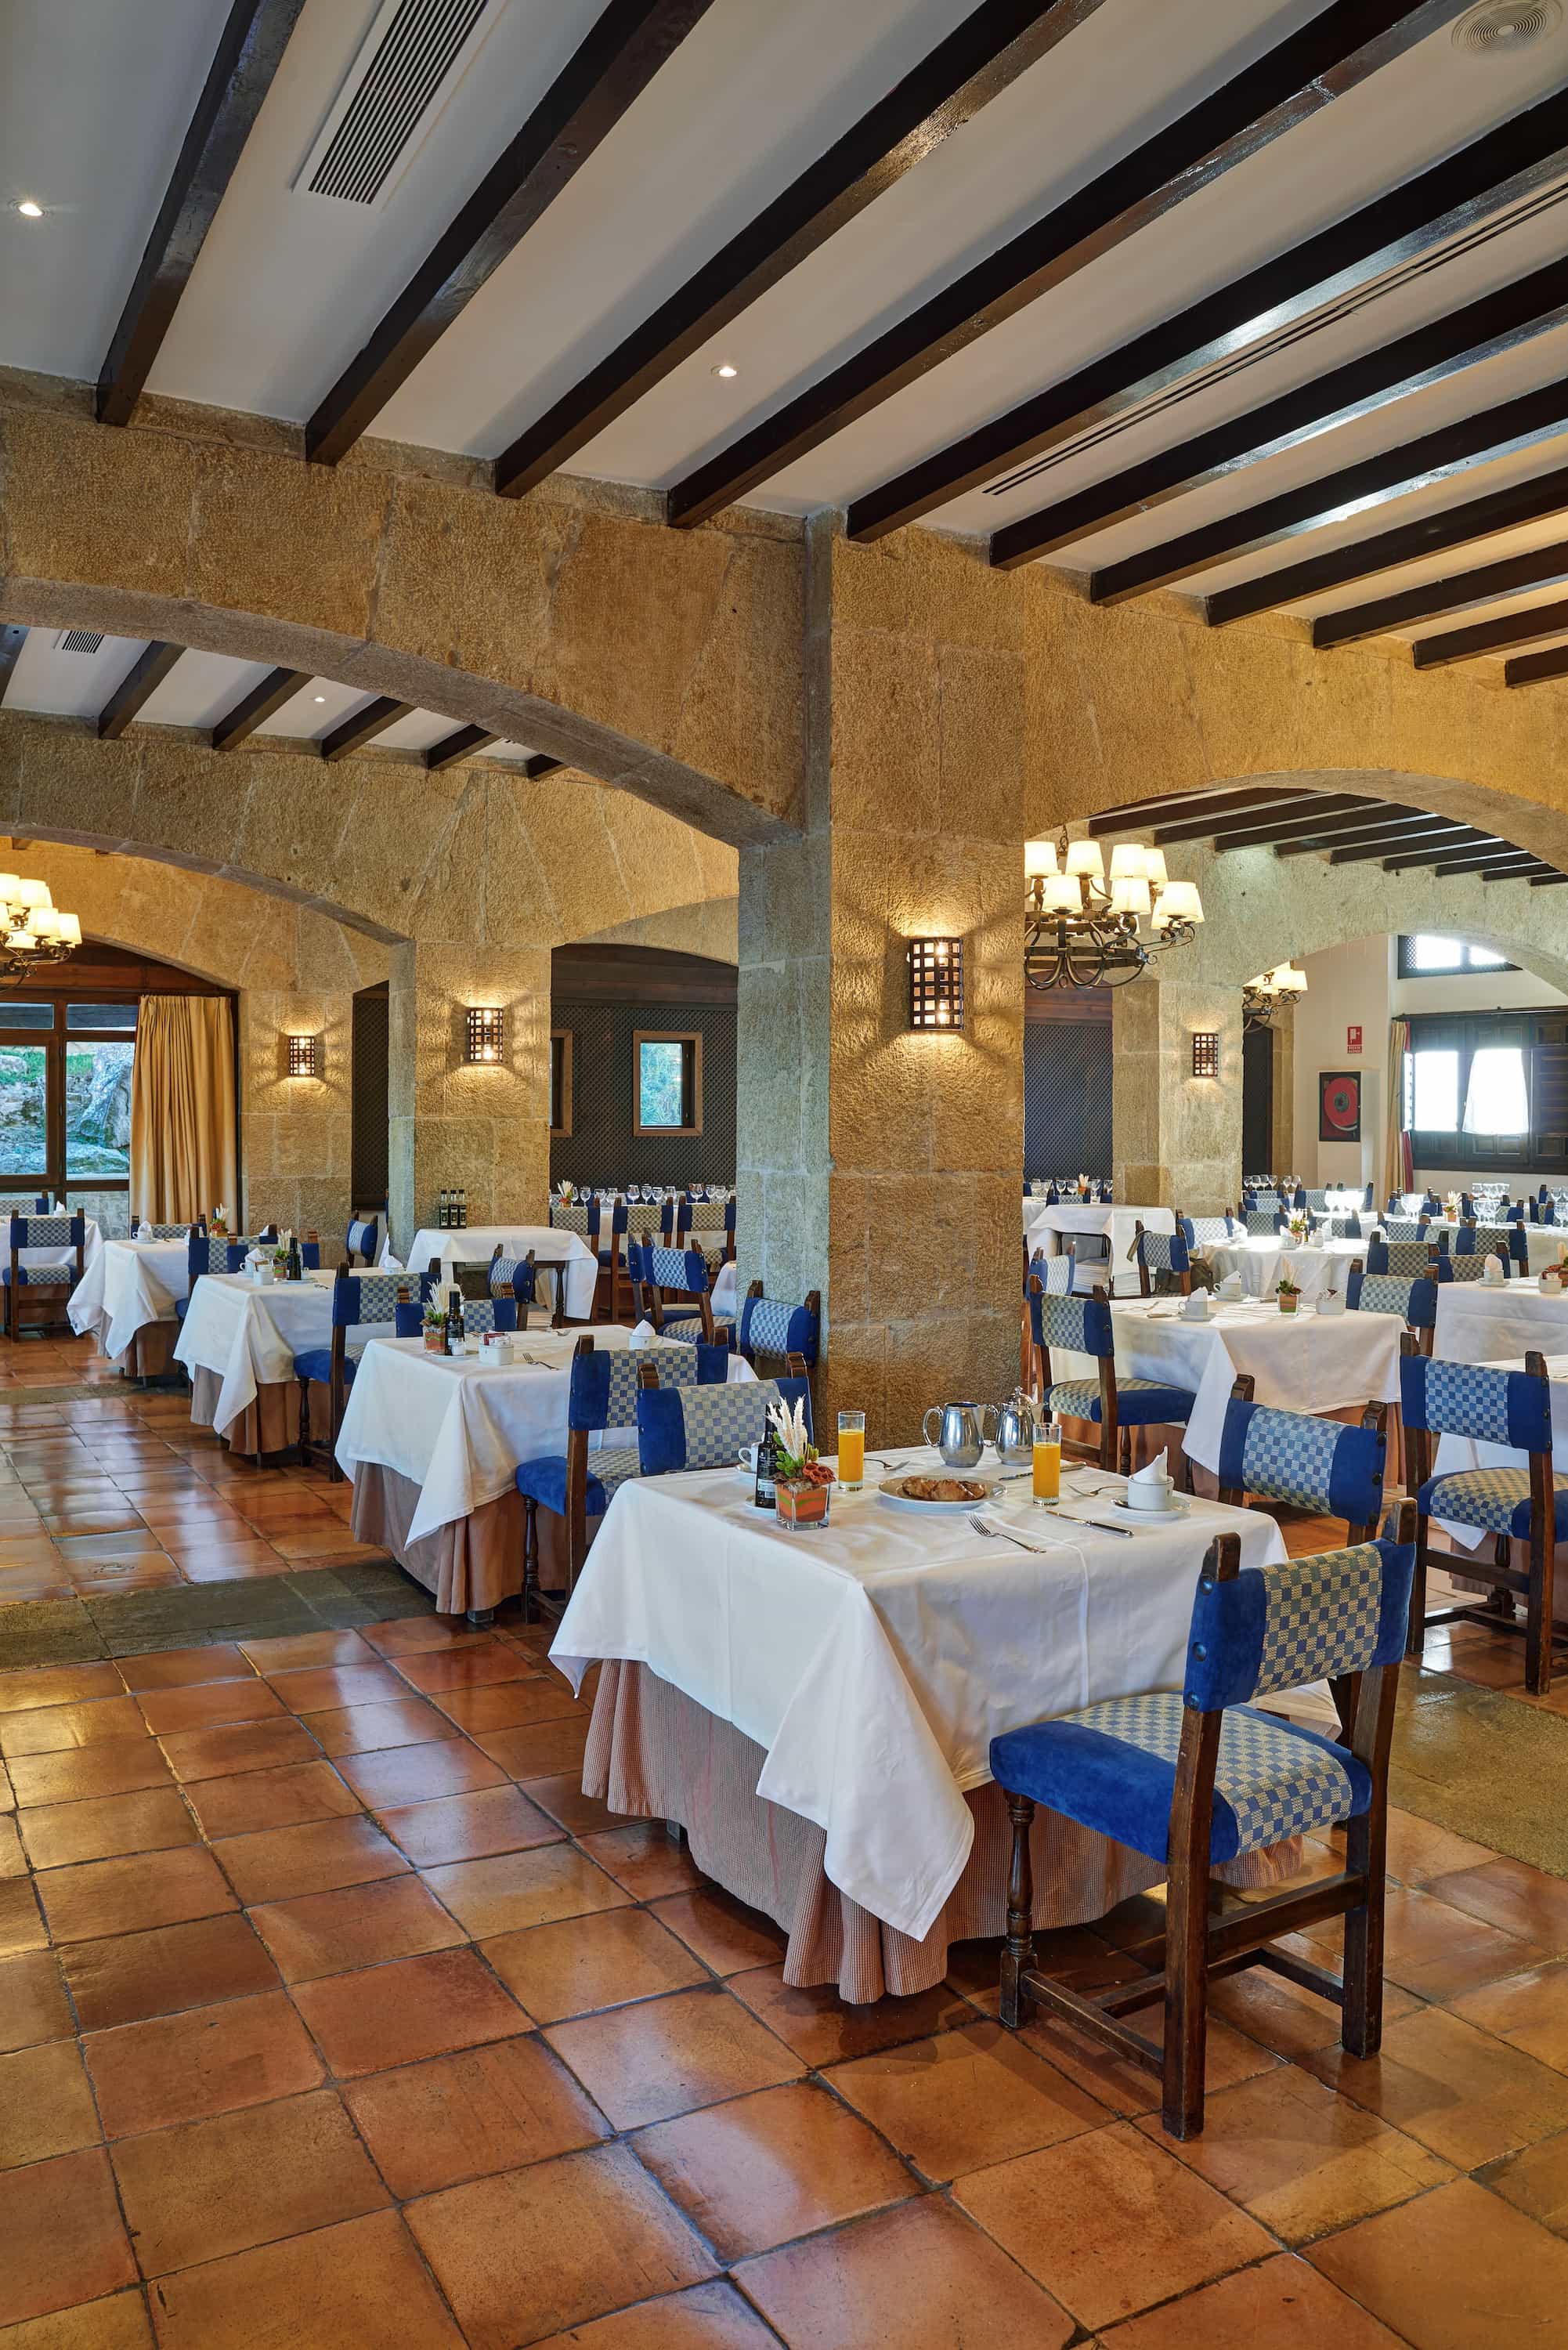 Comedor con grandes columnas de piedra del Restaurante Las Cinco Villas